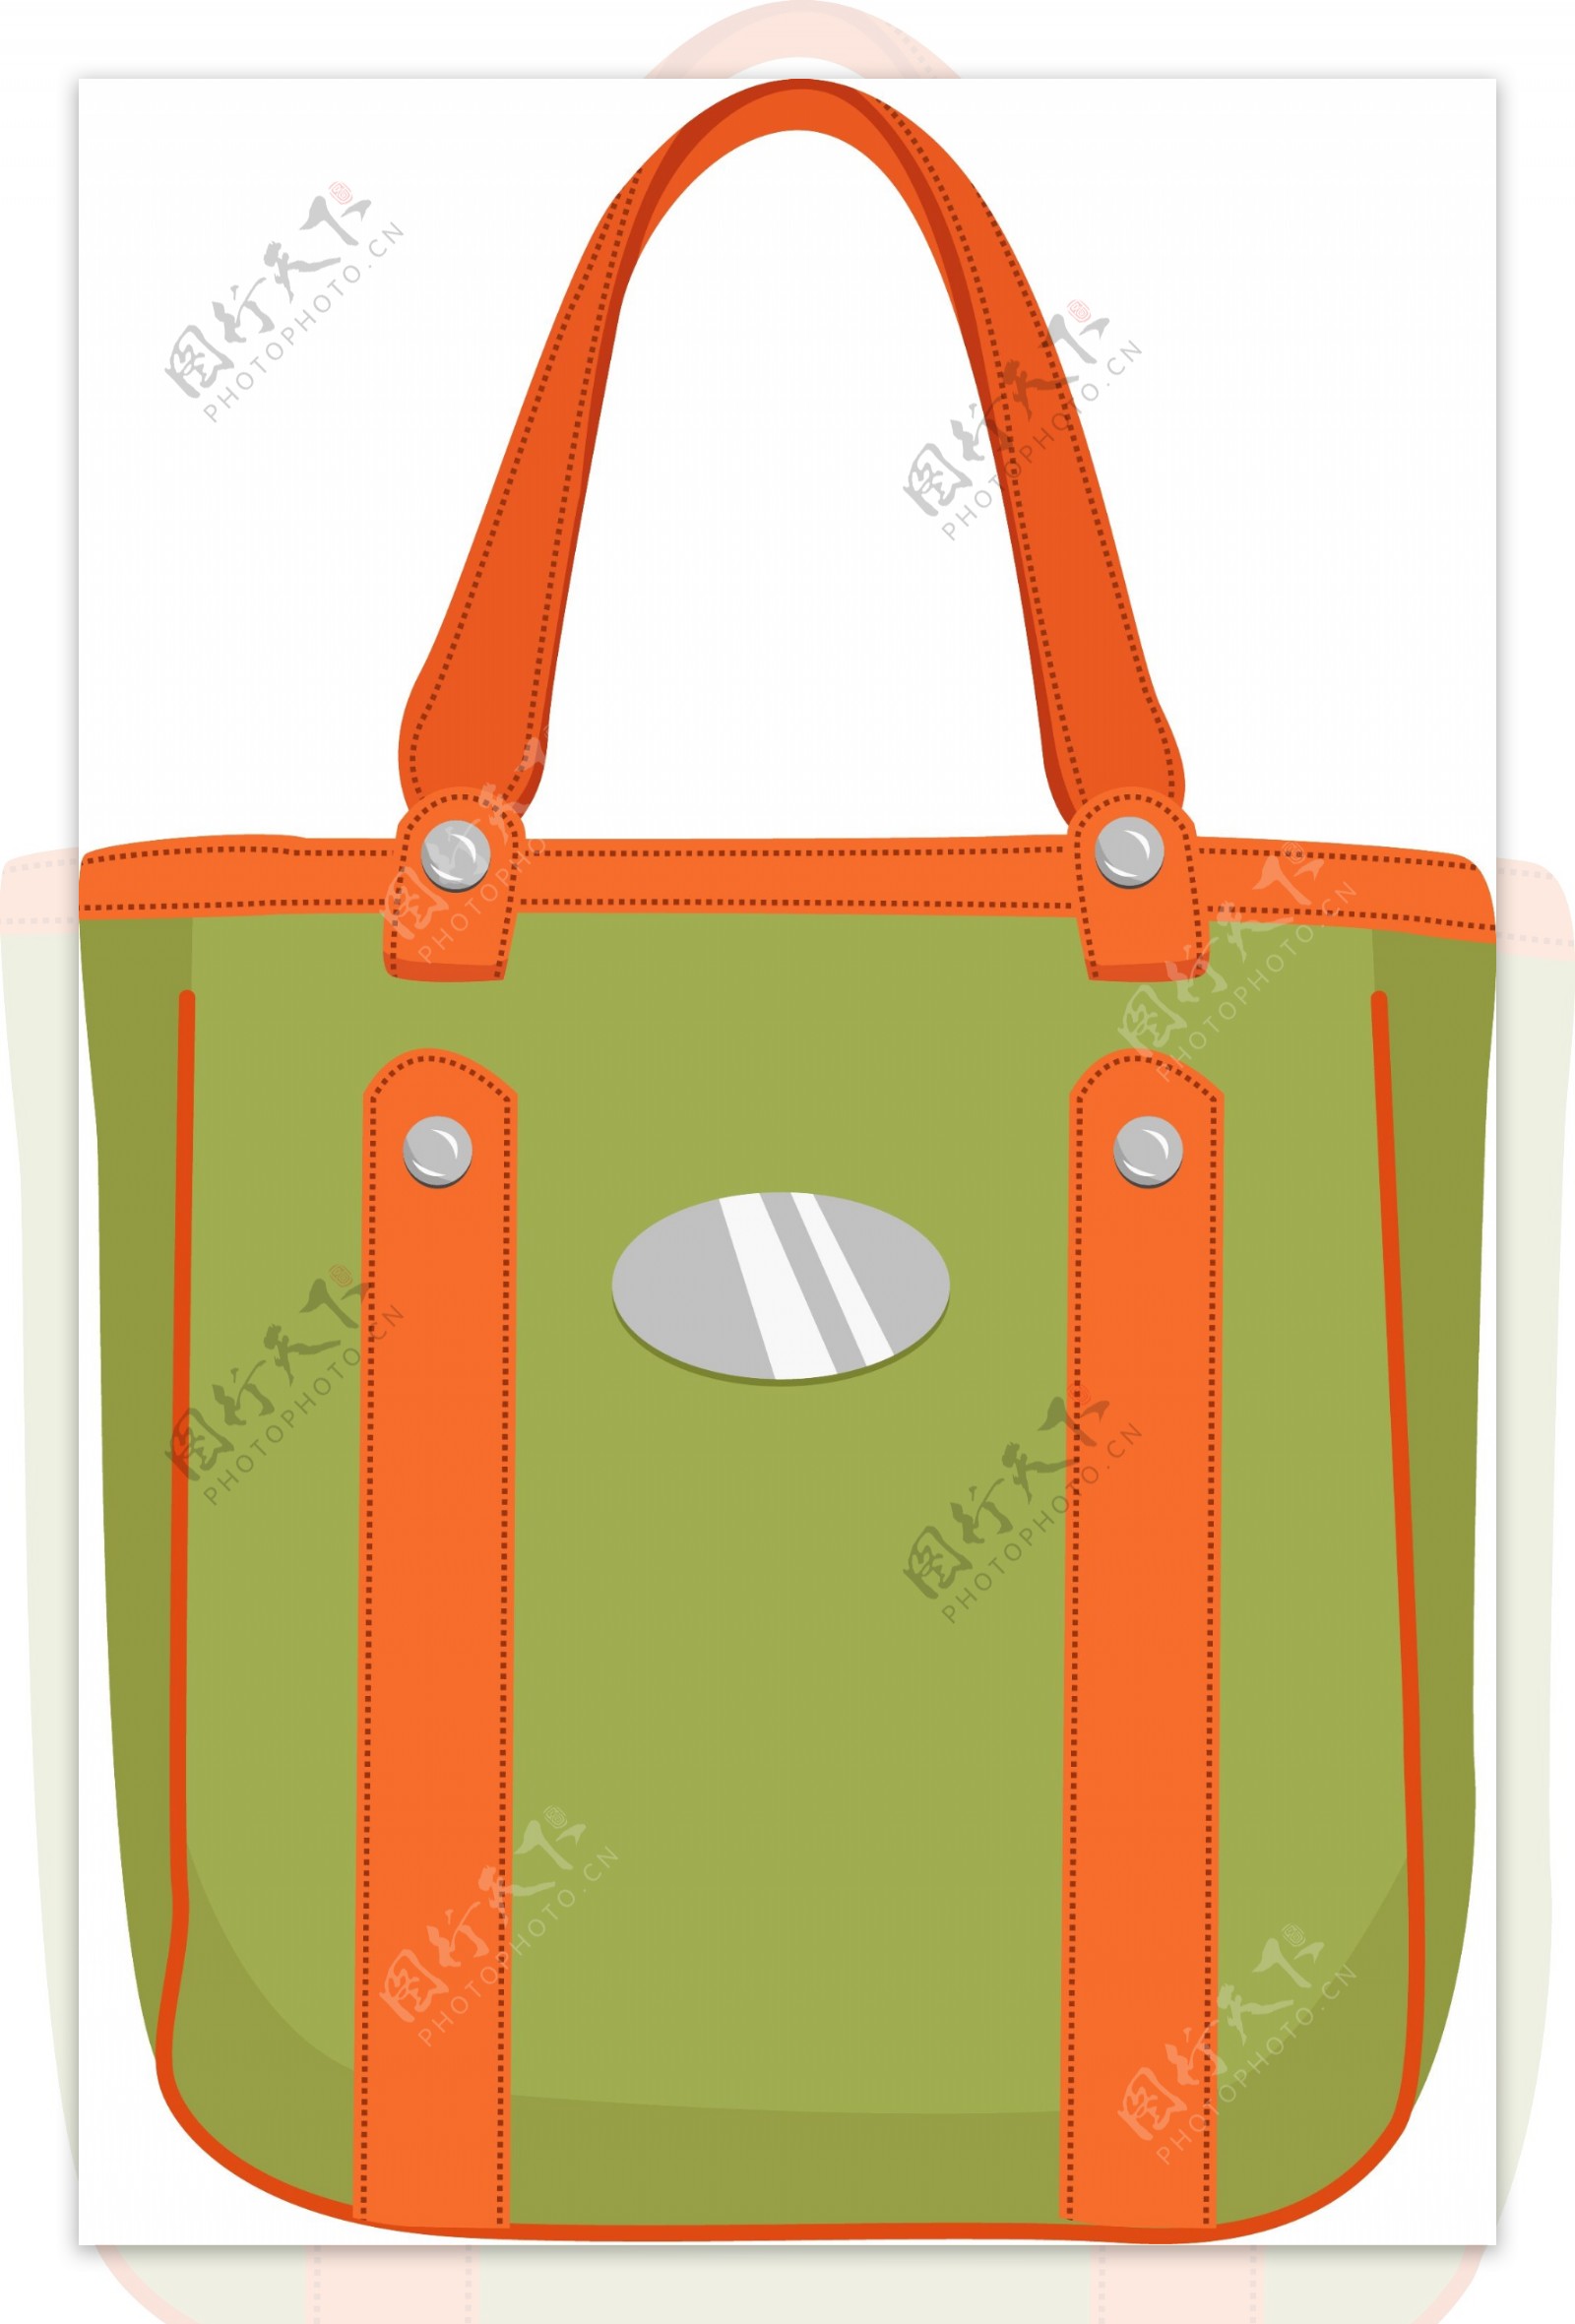 生活用品之绿色手提包包